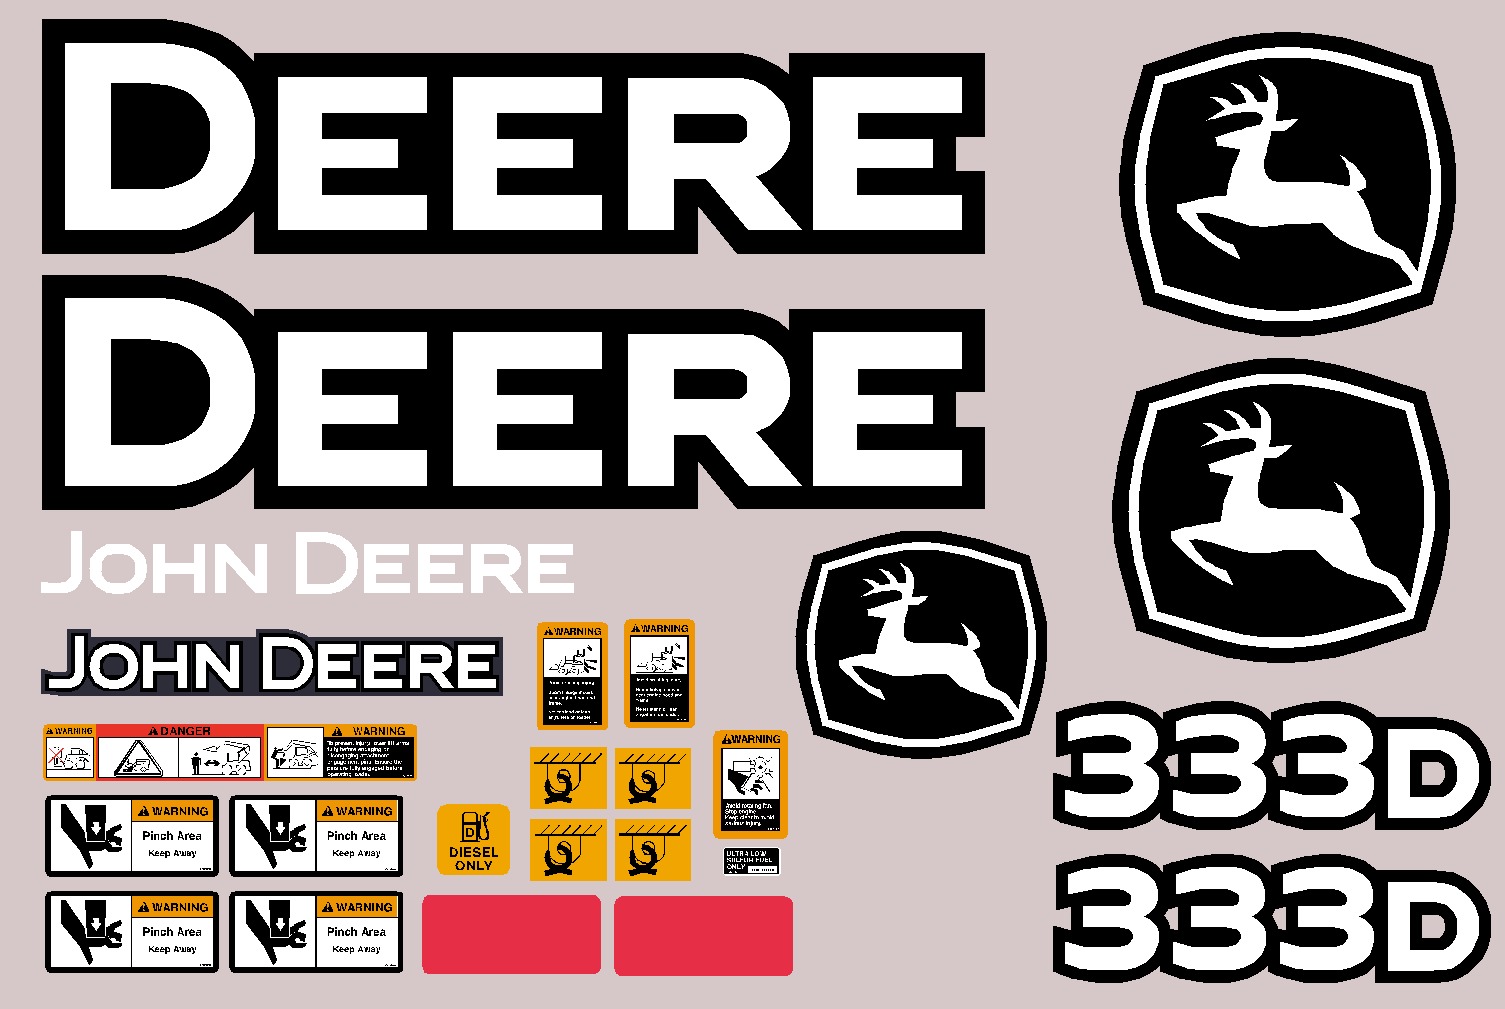 Deere Skid Steer Loaders 333D Decal Packages